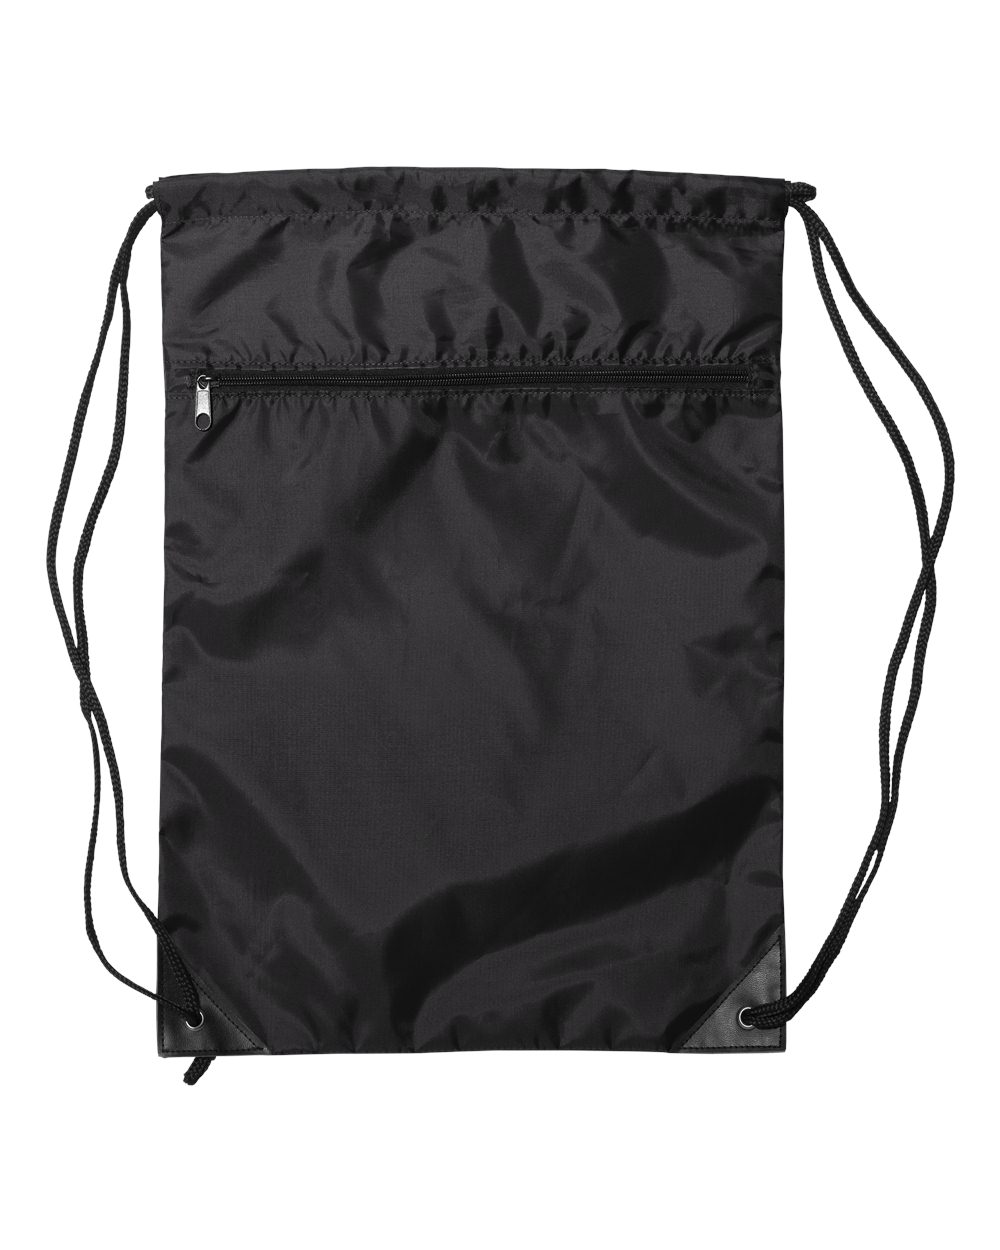 Aero Tech Designs custom | Drawstring Bag Questions & Answers